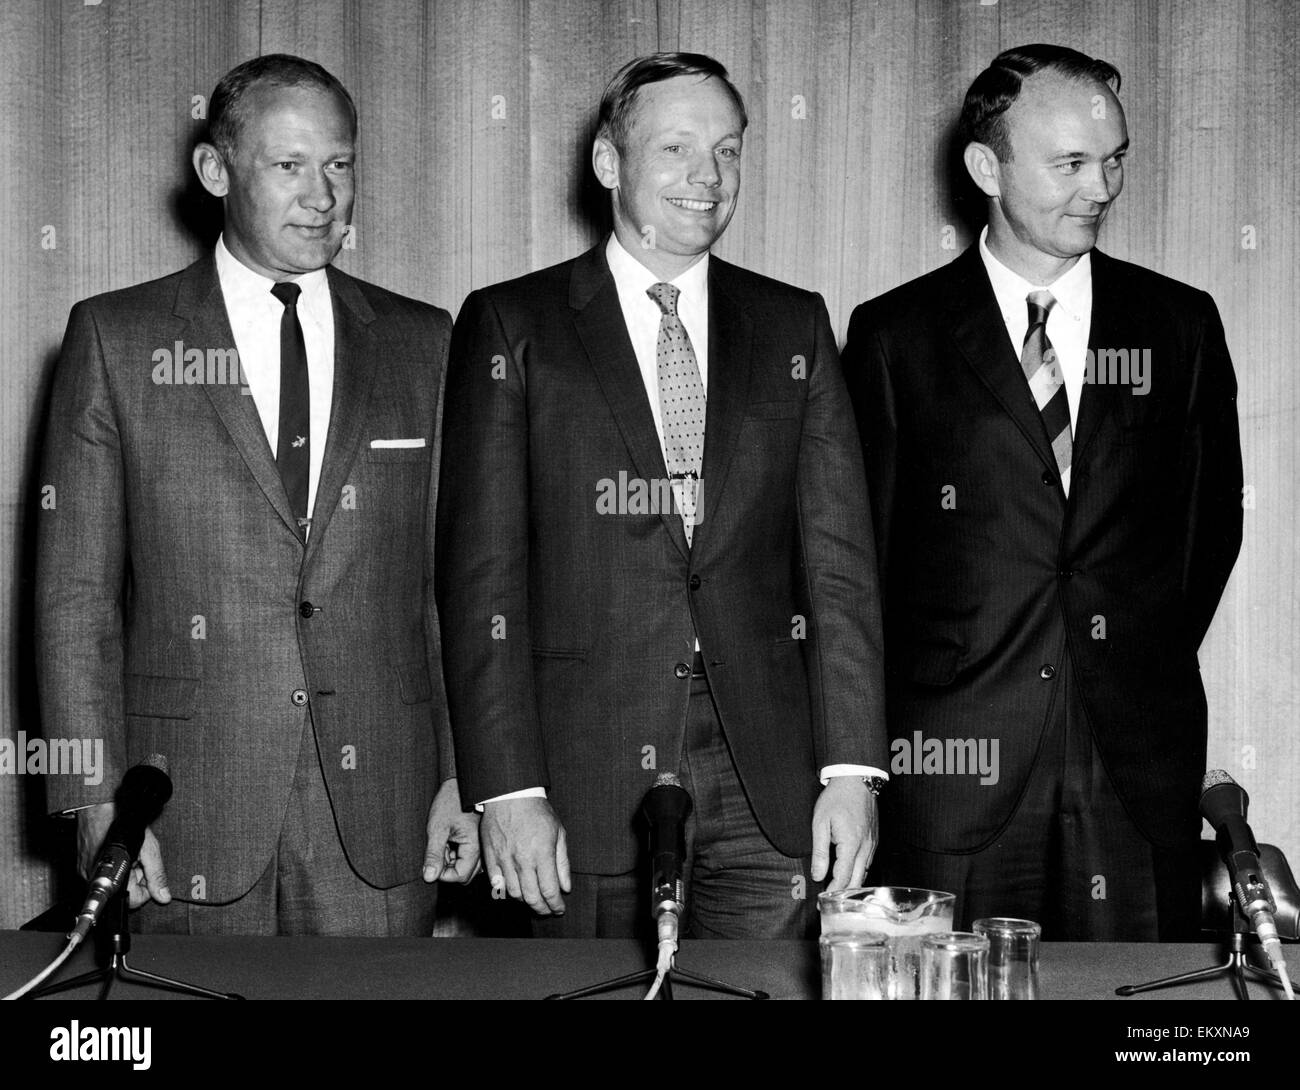 America's trois astronautes d'Apollo 11 vu ici à une conférence de presse à l'ambassade des États-Unis à Grosvenor Square. De gauche à droite Edwin "Buzz" Aldrin, Neil Armstrong et Michael Collins . 14 Octobre 1969 Banque D'Images